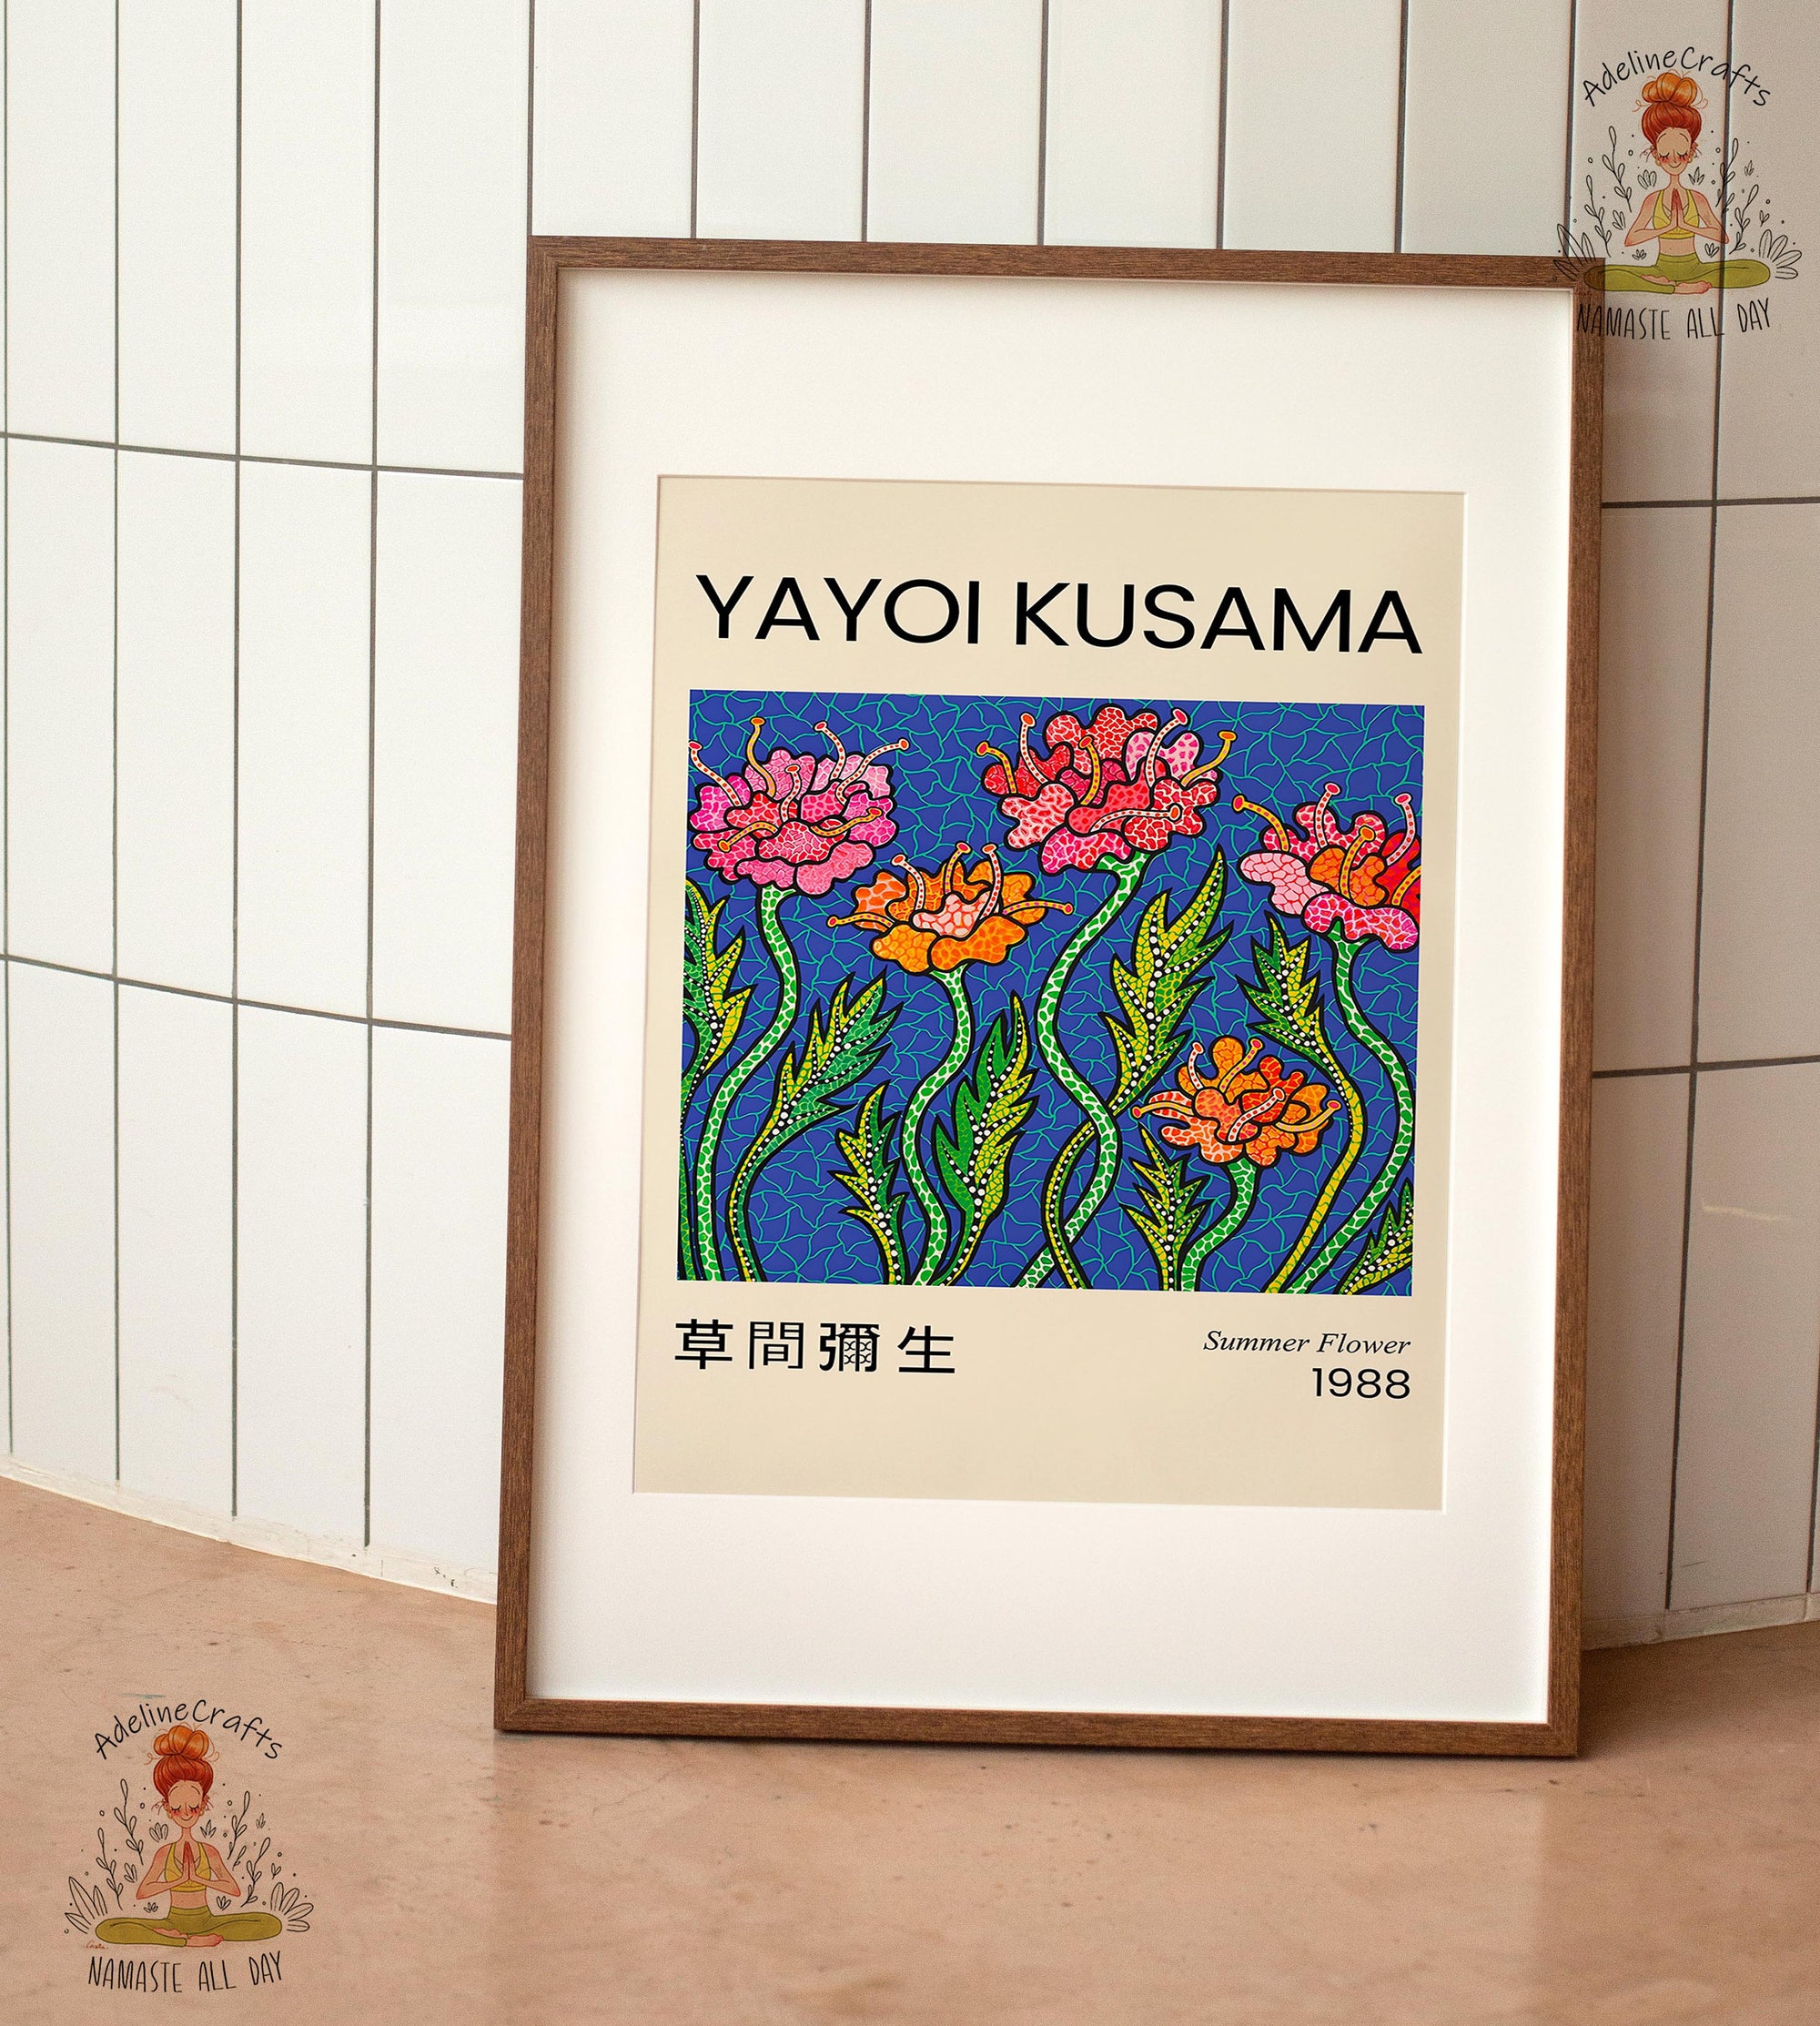 Yayoi Kusama Poster